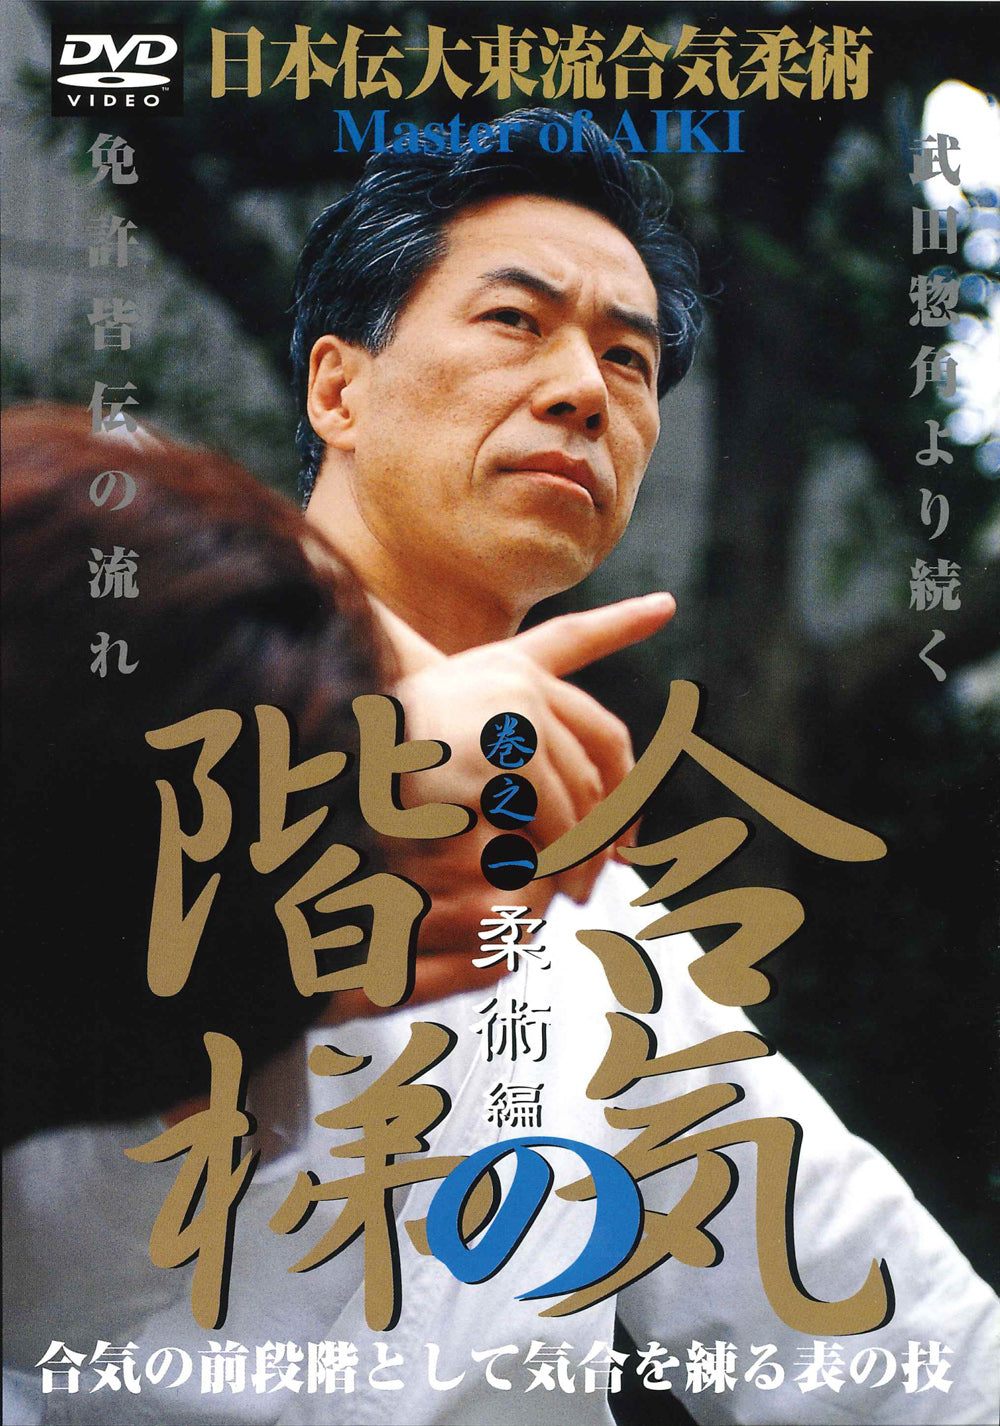 Master of Aiki DVD 1 by Kogen Sugasawa